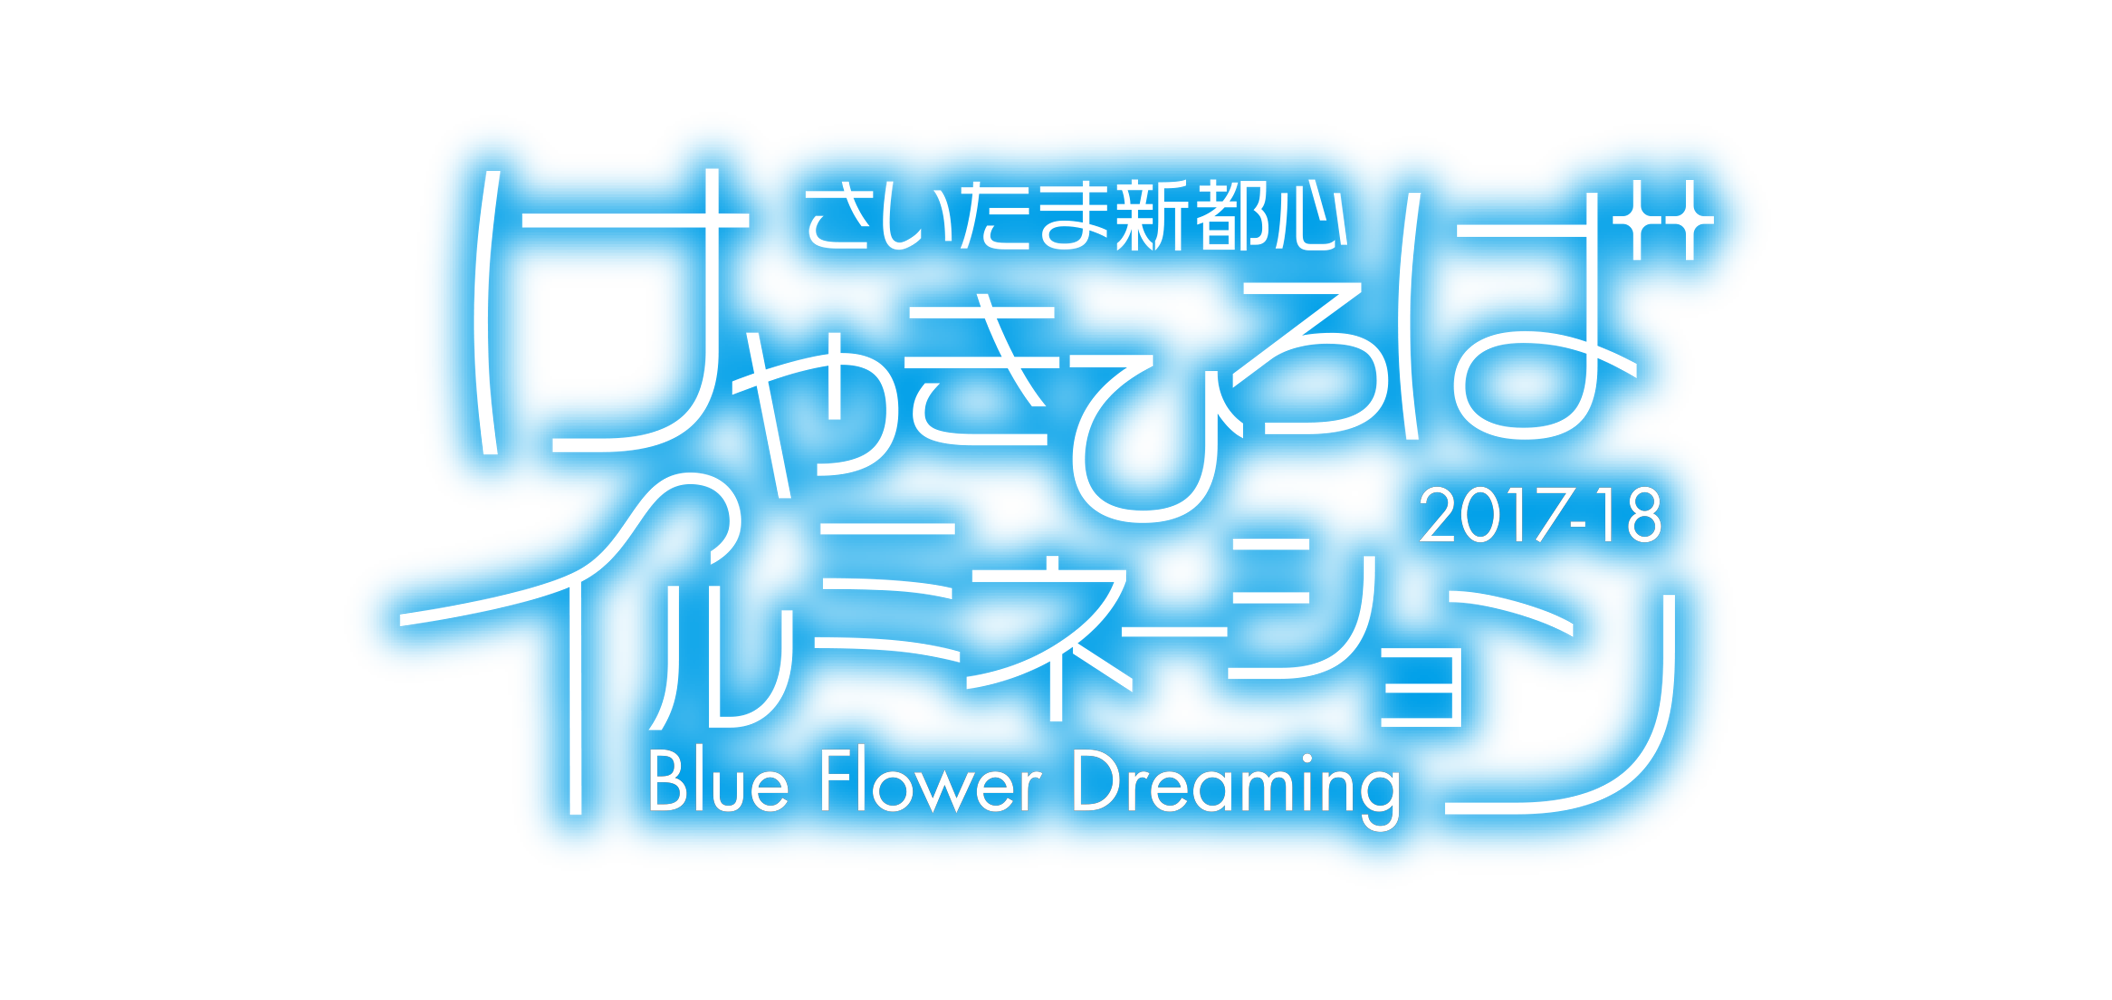 さいたま新都心 けやきひろばイルミネーション 2017-2018 Blue Flower Dreaming 点灯期間 2017.10.21(sat)-2018.2.14(wed) 点灯時間17:00-24:00 初日はセレモニー実施のため18:00頃に点灯予定